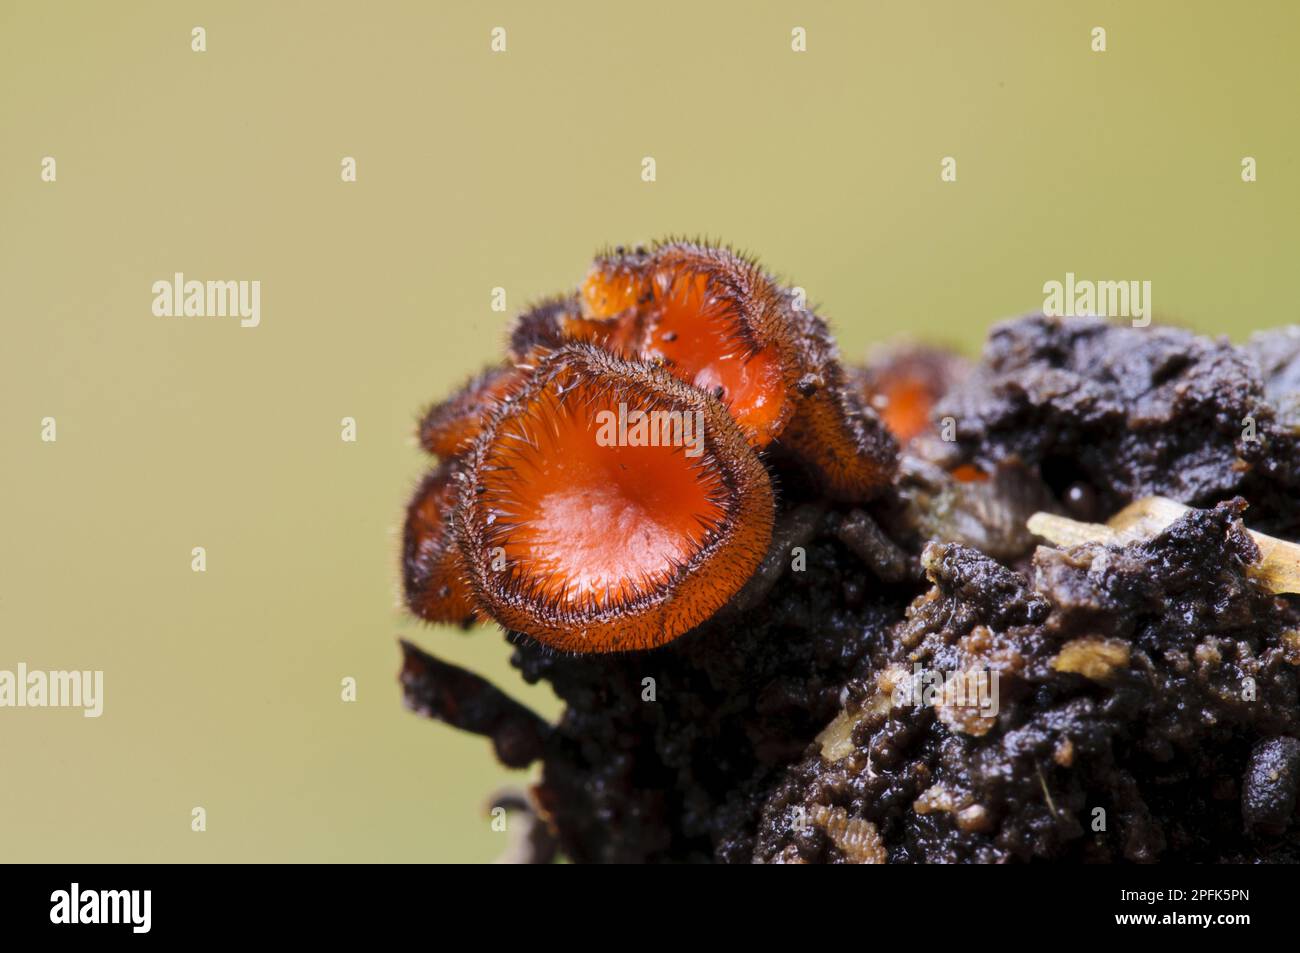 Eyelash Fungus (Scutellinia scutellata) fruiting bodies, Clumber Park, Nottinghamshire, England, United Kingdom Stock Photo